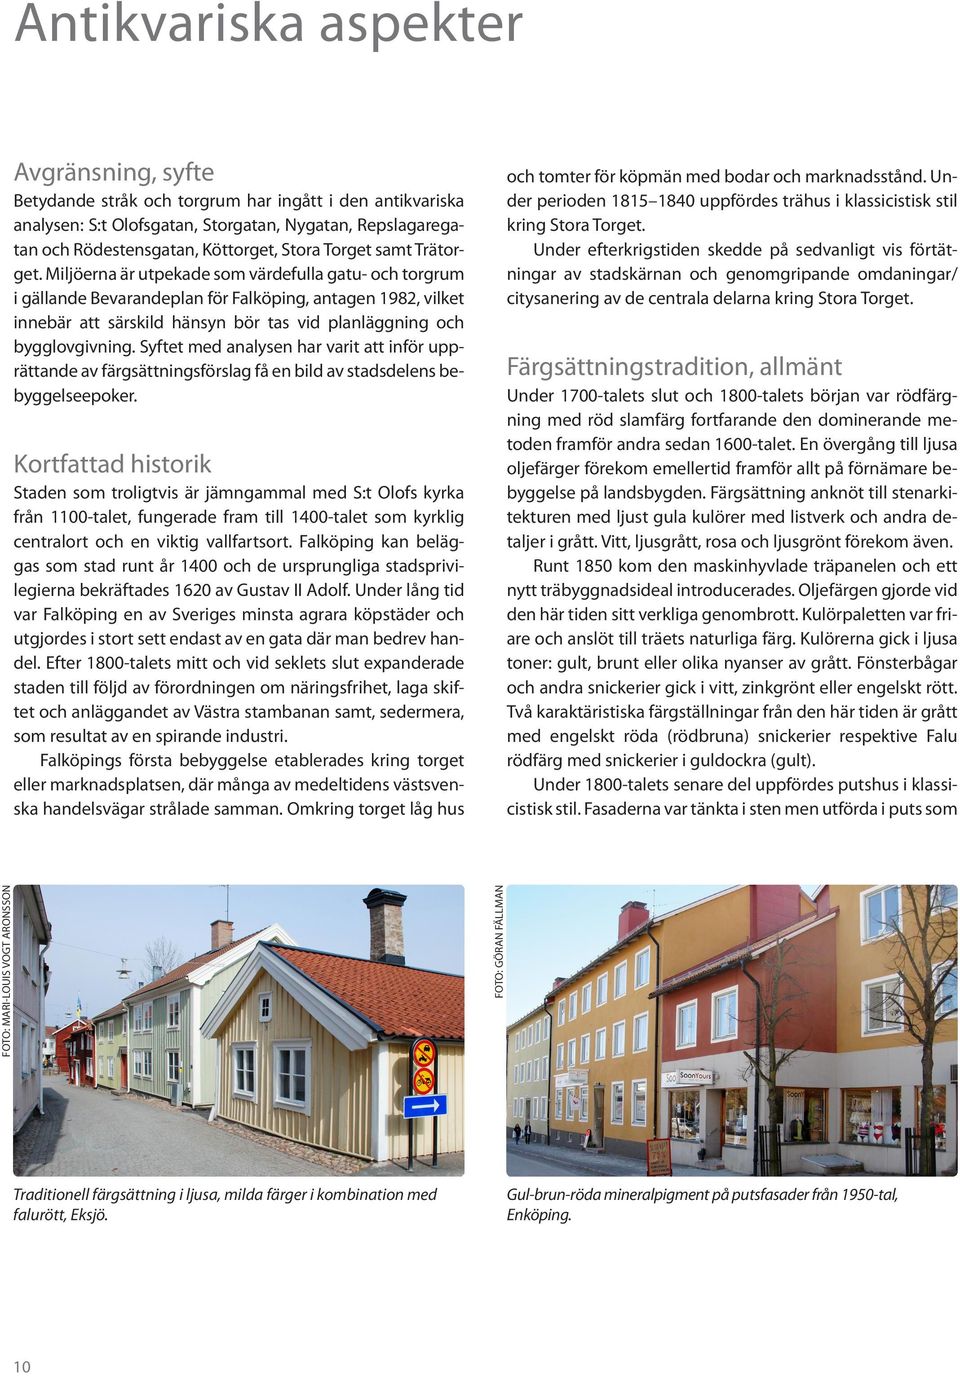 Miljöerna är utpekade som värdefulla gatu- och torgrum i gällande Bevarandeplan för Falköping, antagen 1982, vilket innebär att särskild hänsyn bör tas vid planläggning och bygglovgivning.